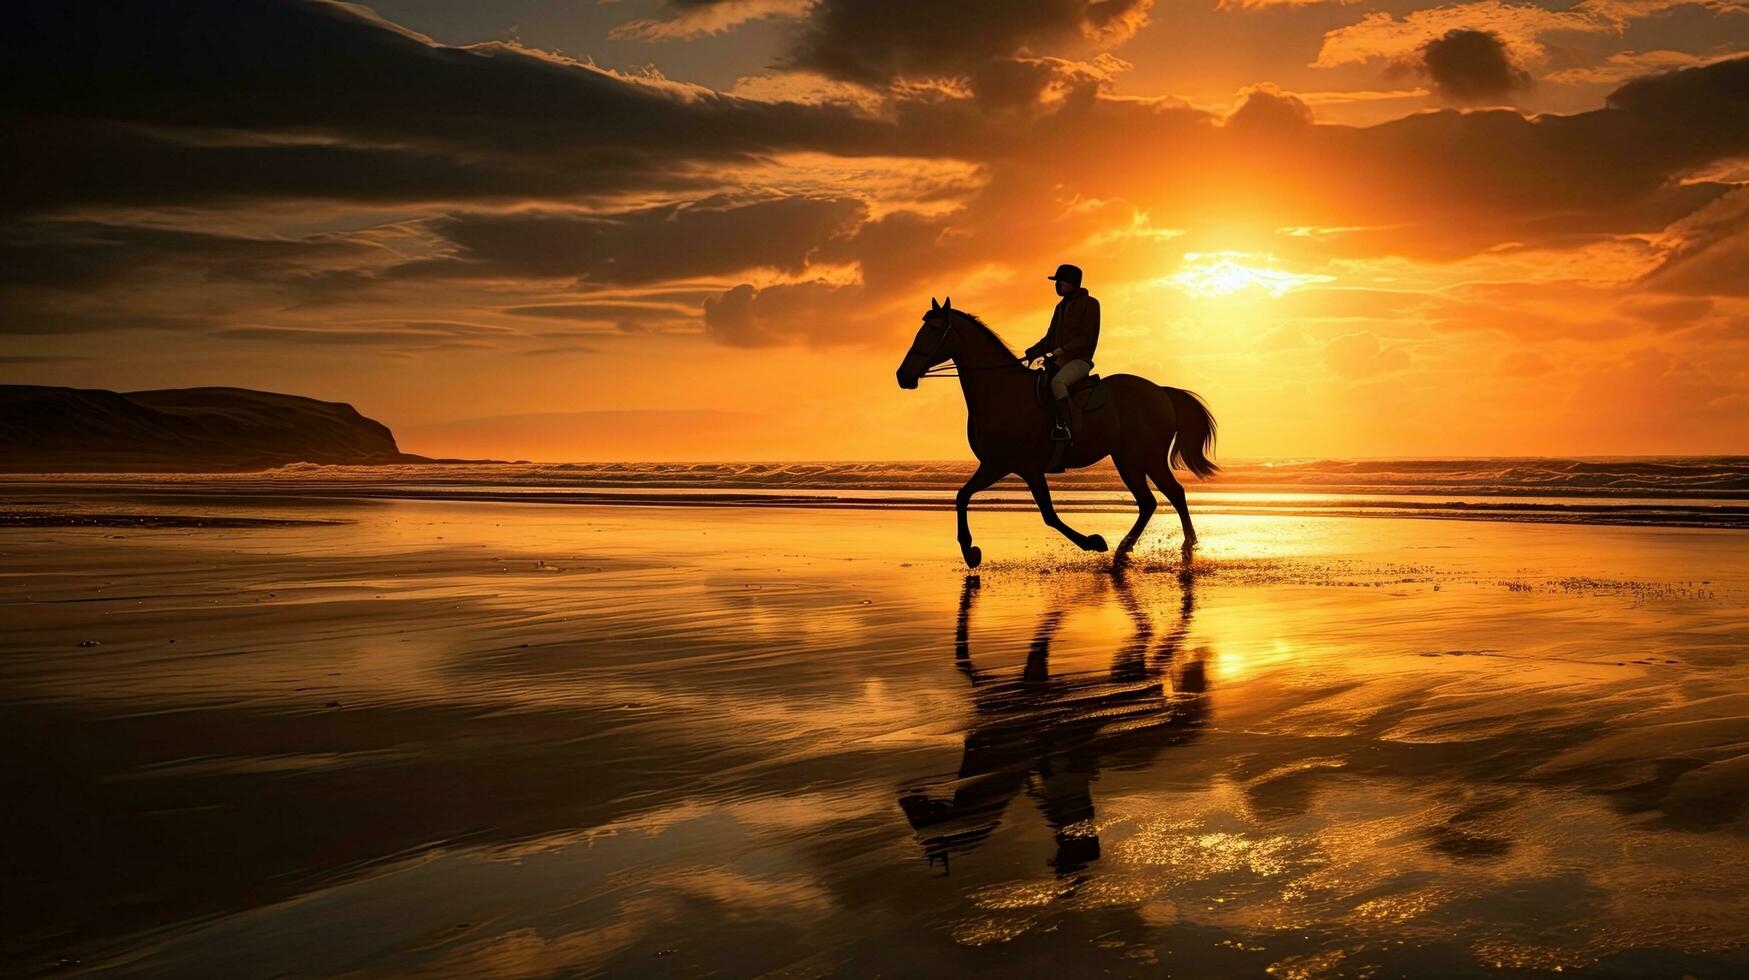 häst och ryttare galopp på ballybunion strand på kerry solnedgång i irland foto